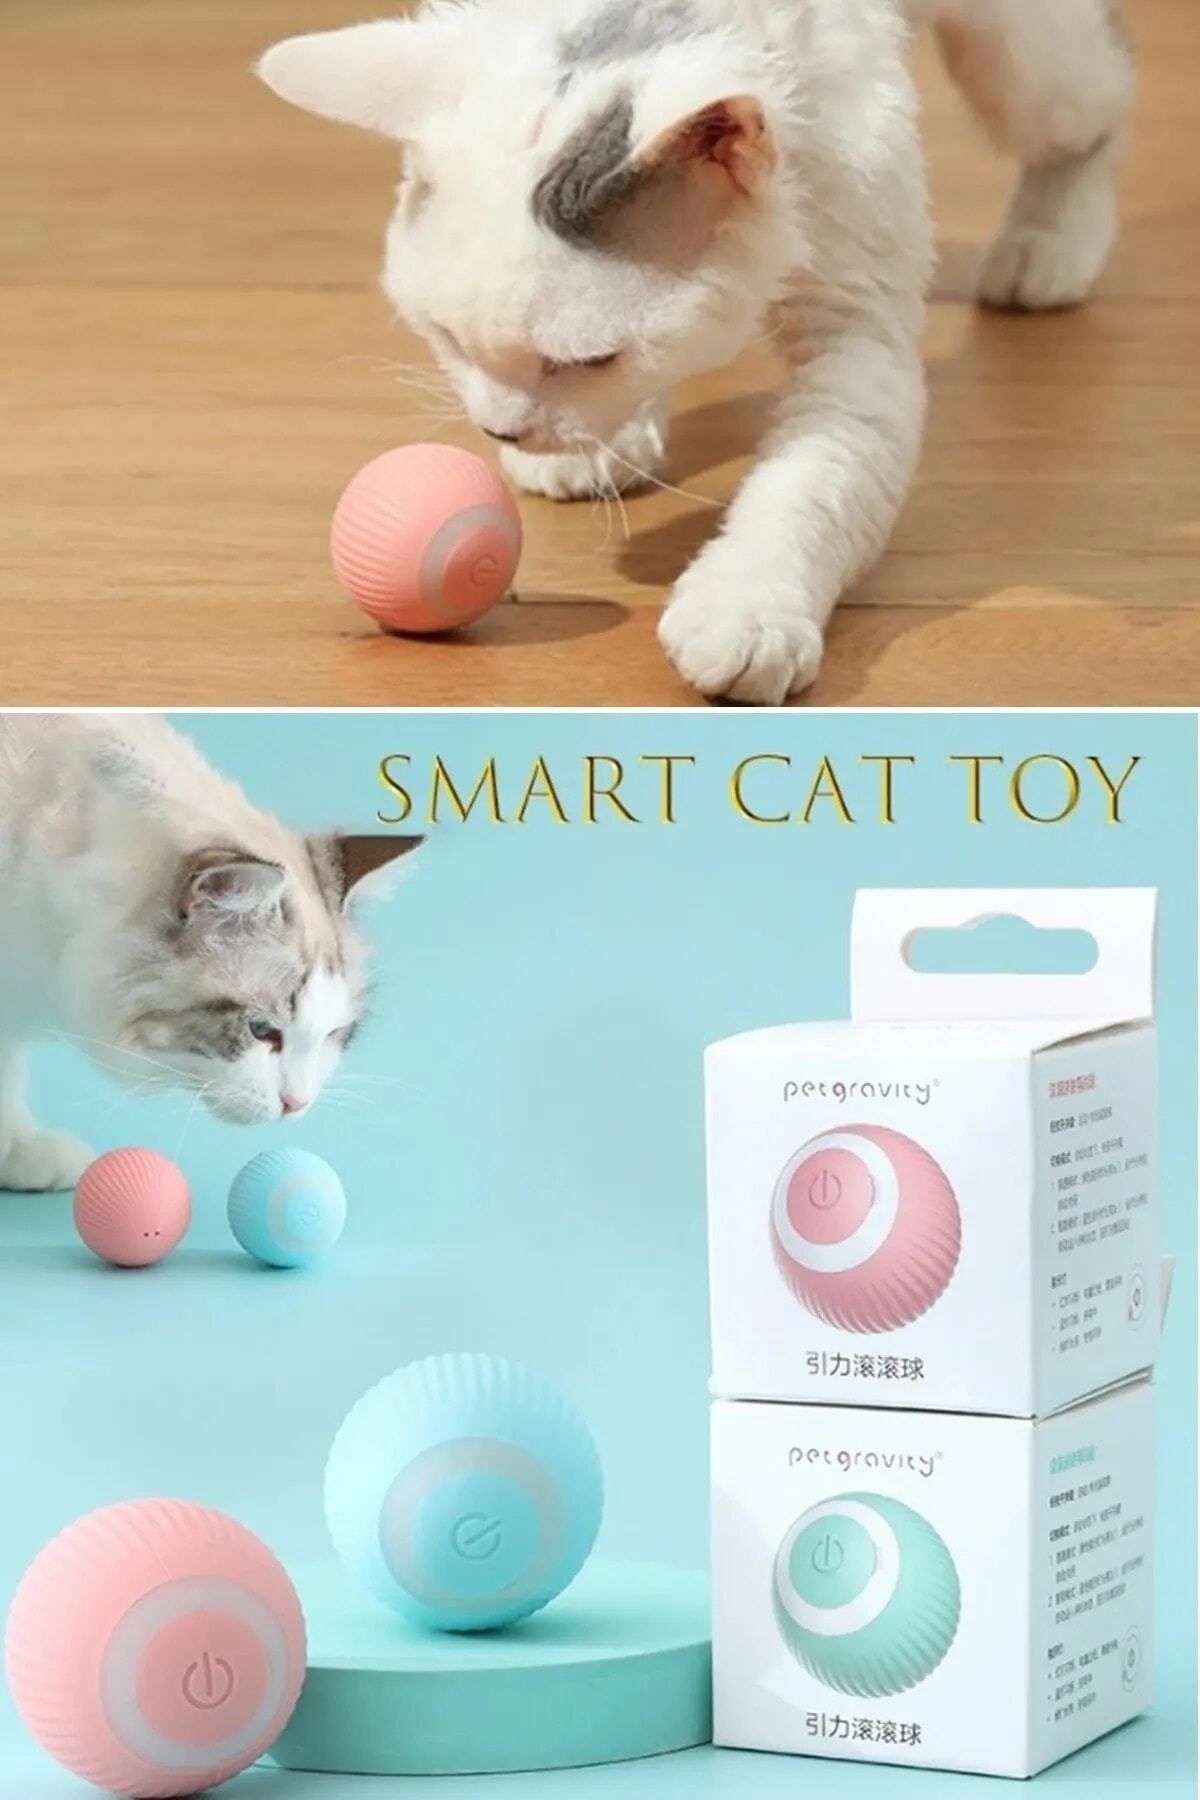 Kitchen Time Şarjlı Otomatik Hareketlenen Kedi Oyun Topu Interaktif 360 Derece Dönen Kedi Oyuncağı Eğitim Topu